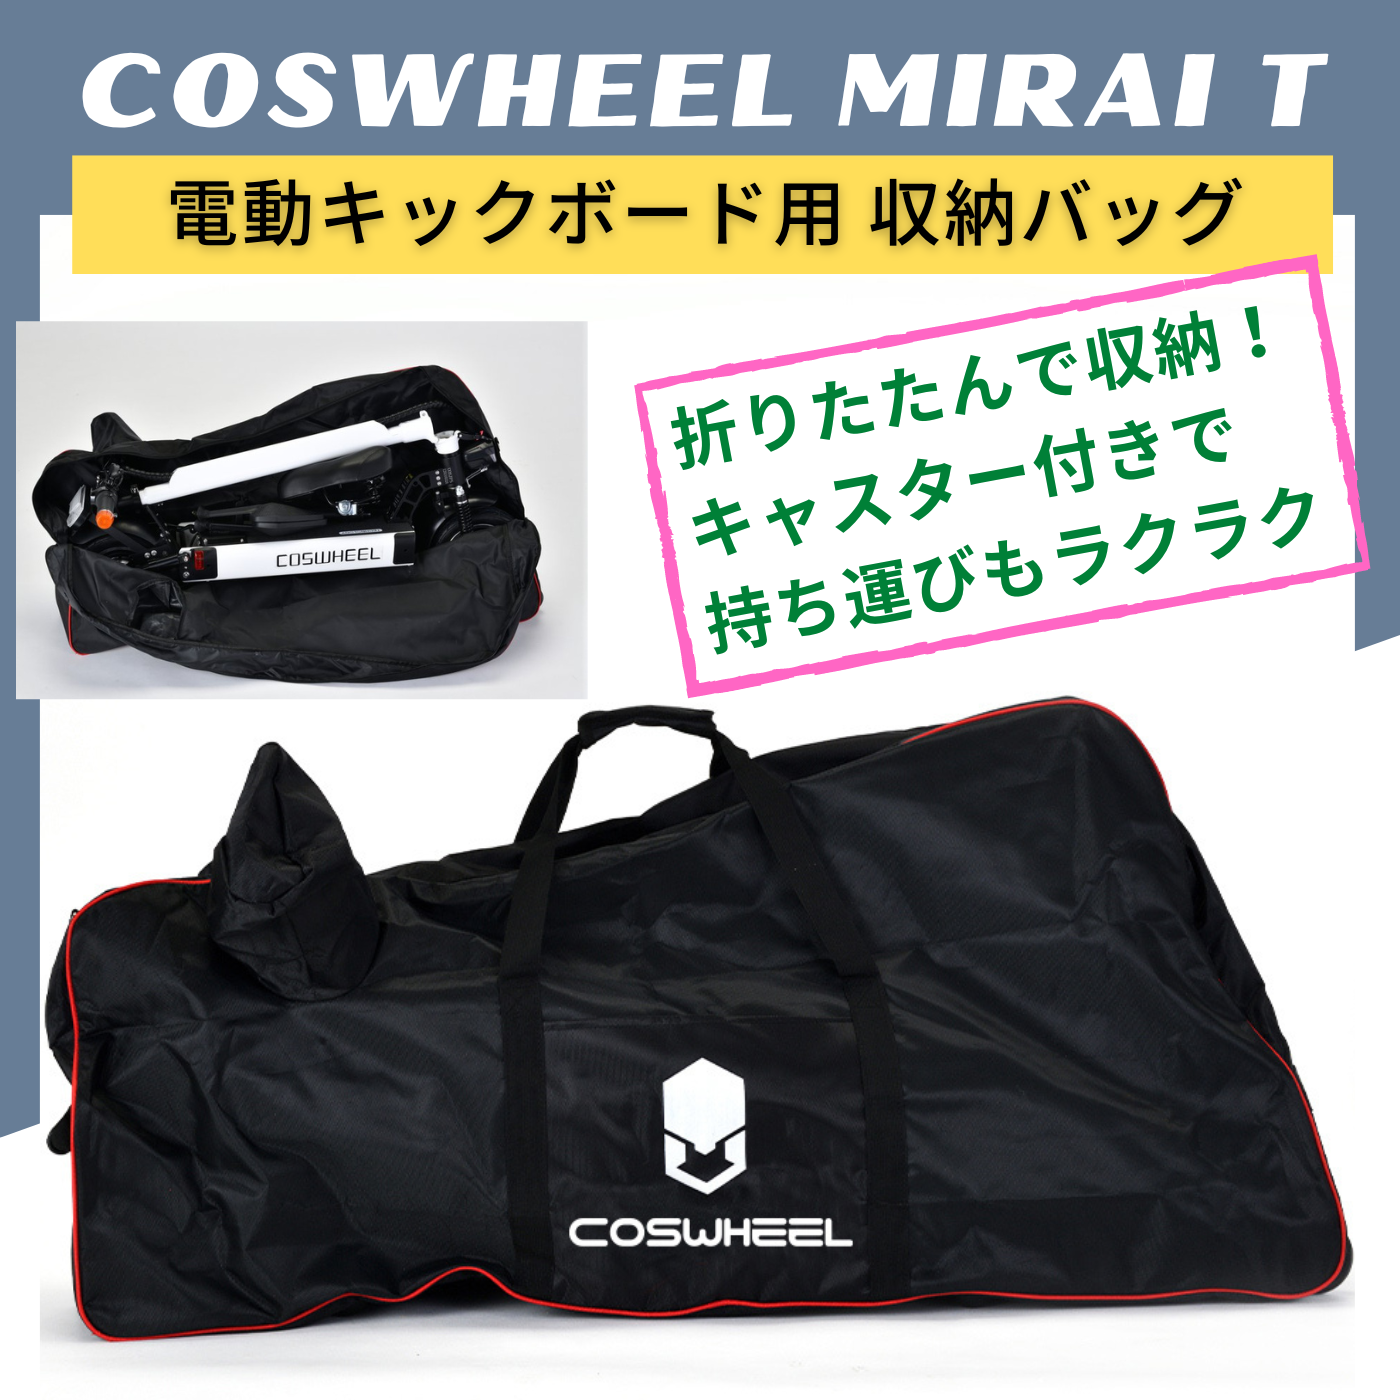 【予約受付中★６月上旬入荷予定】COSWHEEL MIRAI T 電動キックボード用 キャスター付き 収納バッグ